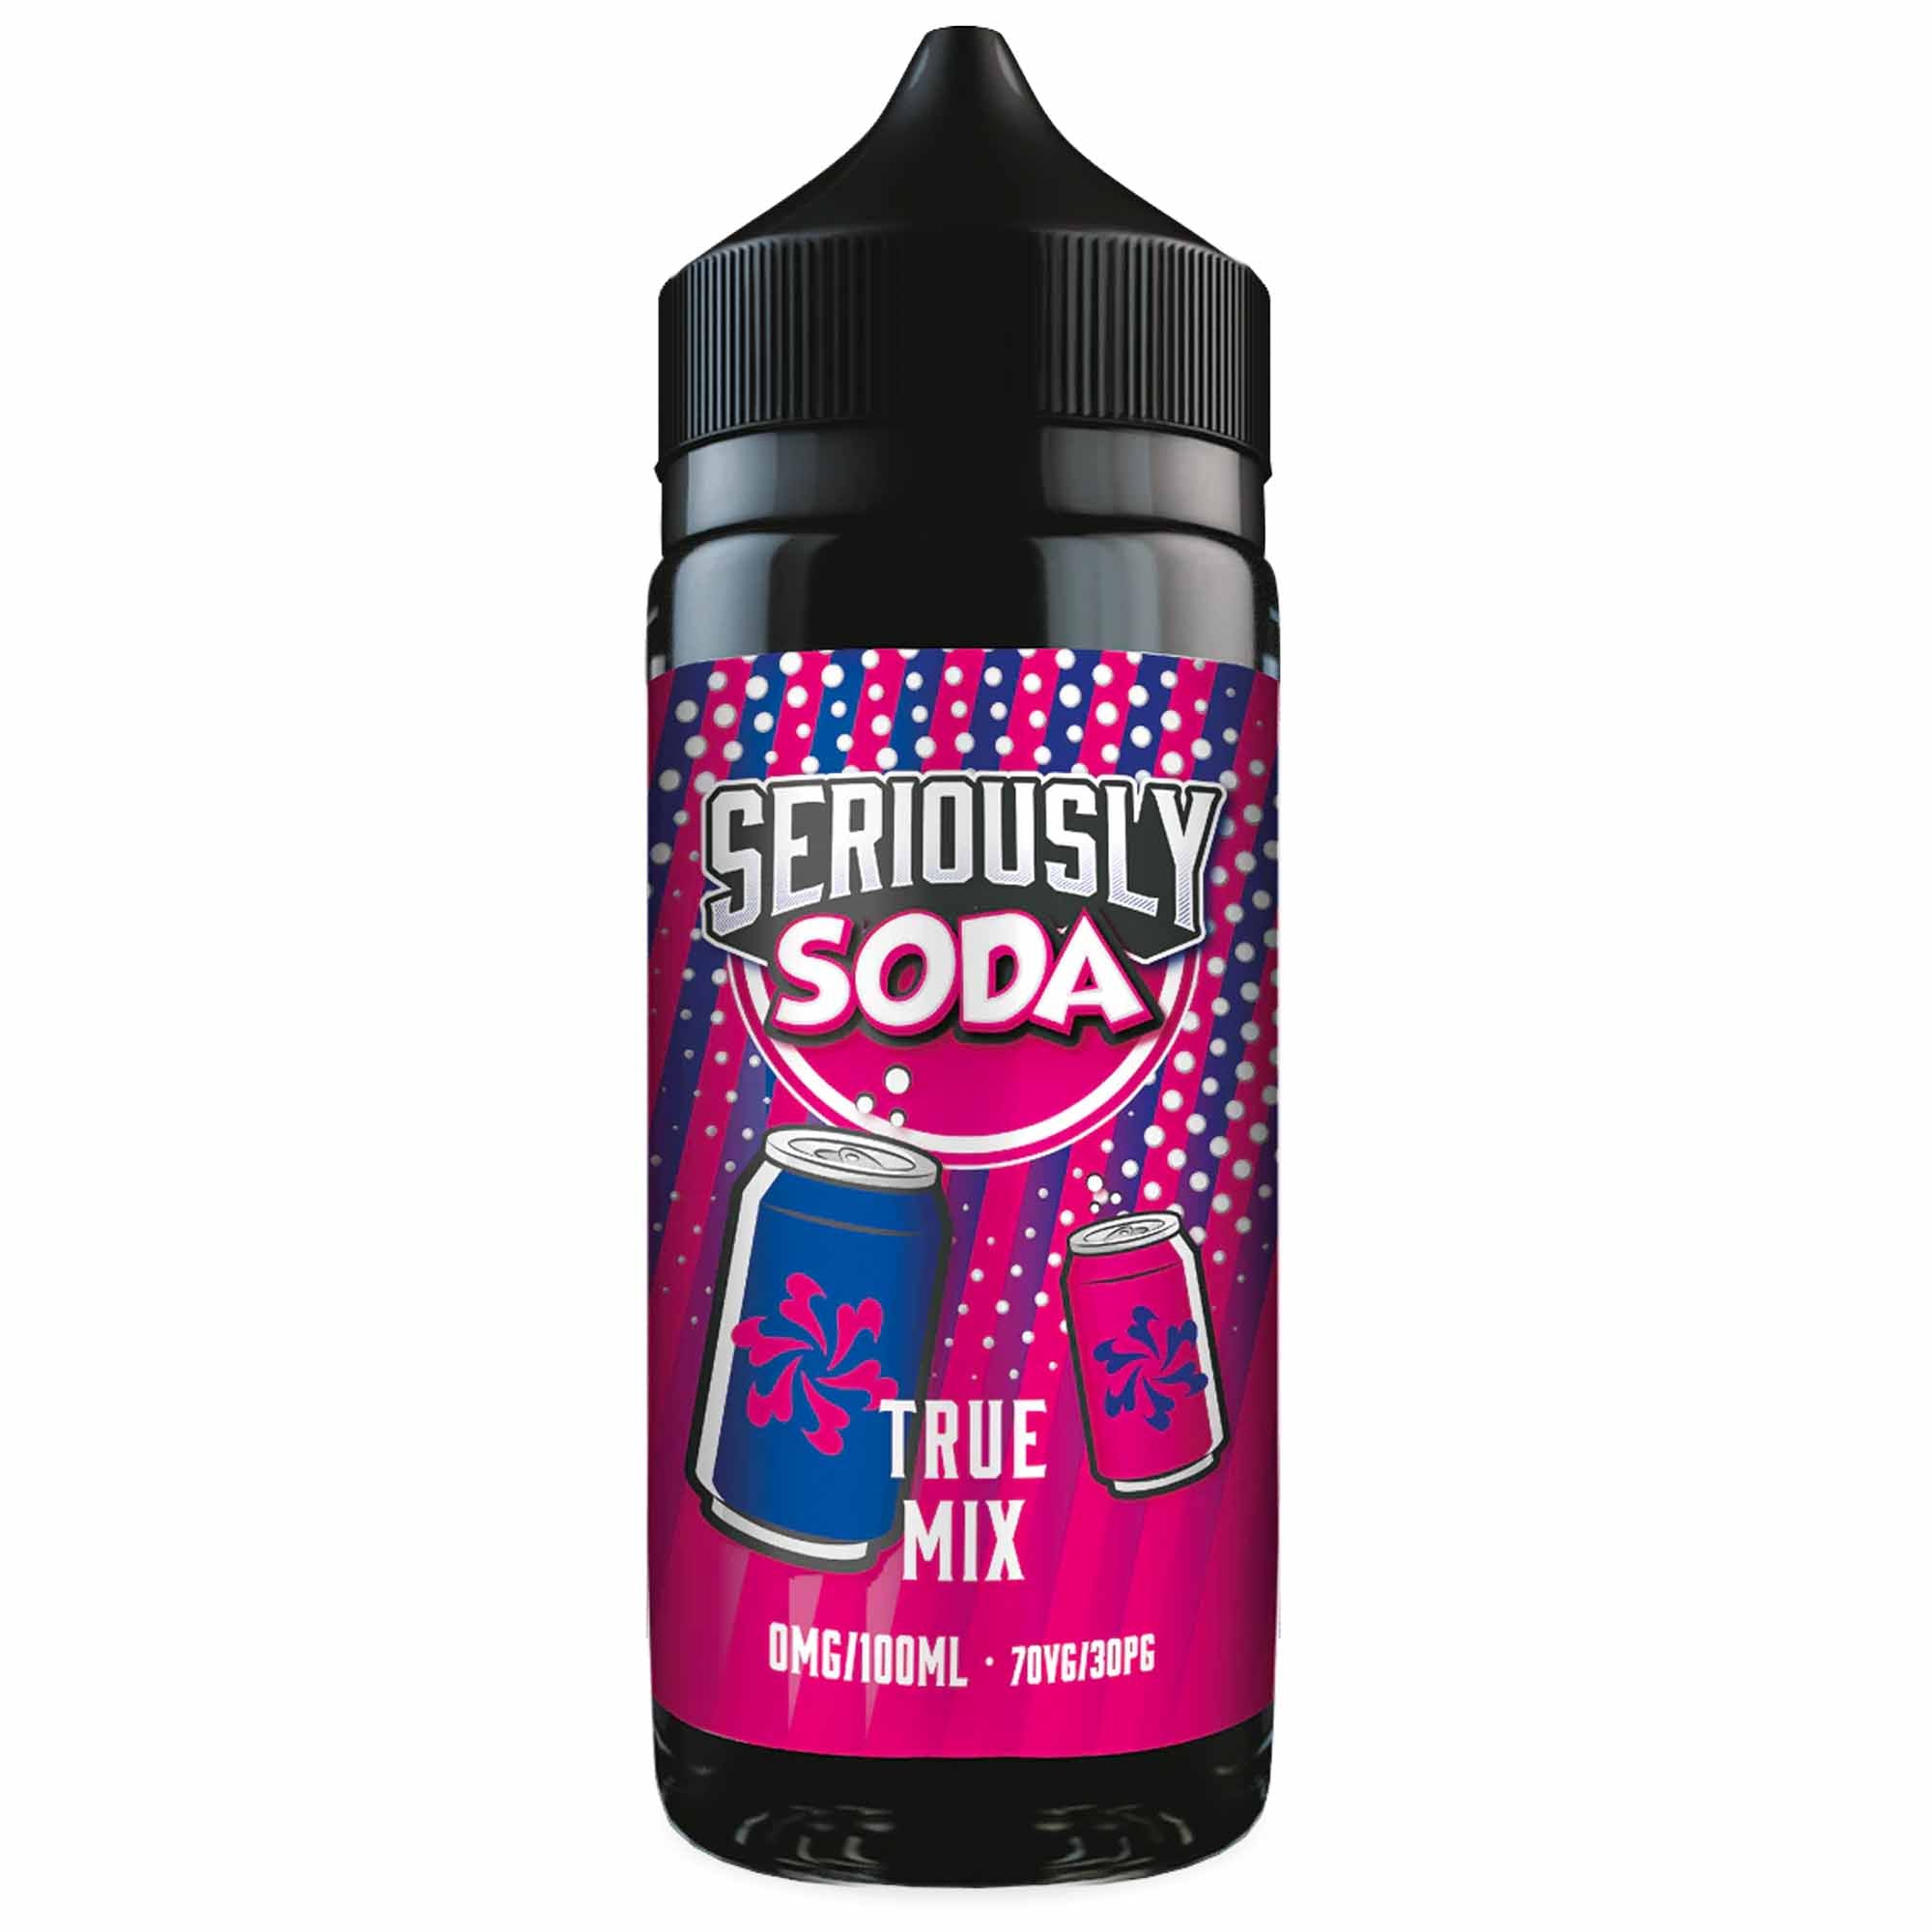 Seriously Soda True Mix 0mg 100ml Shortfill E-Liquid